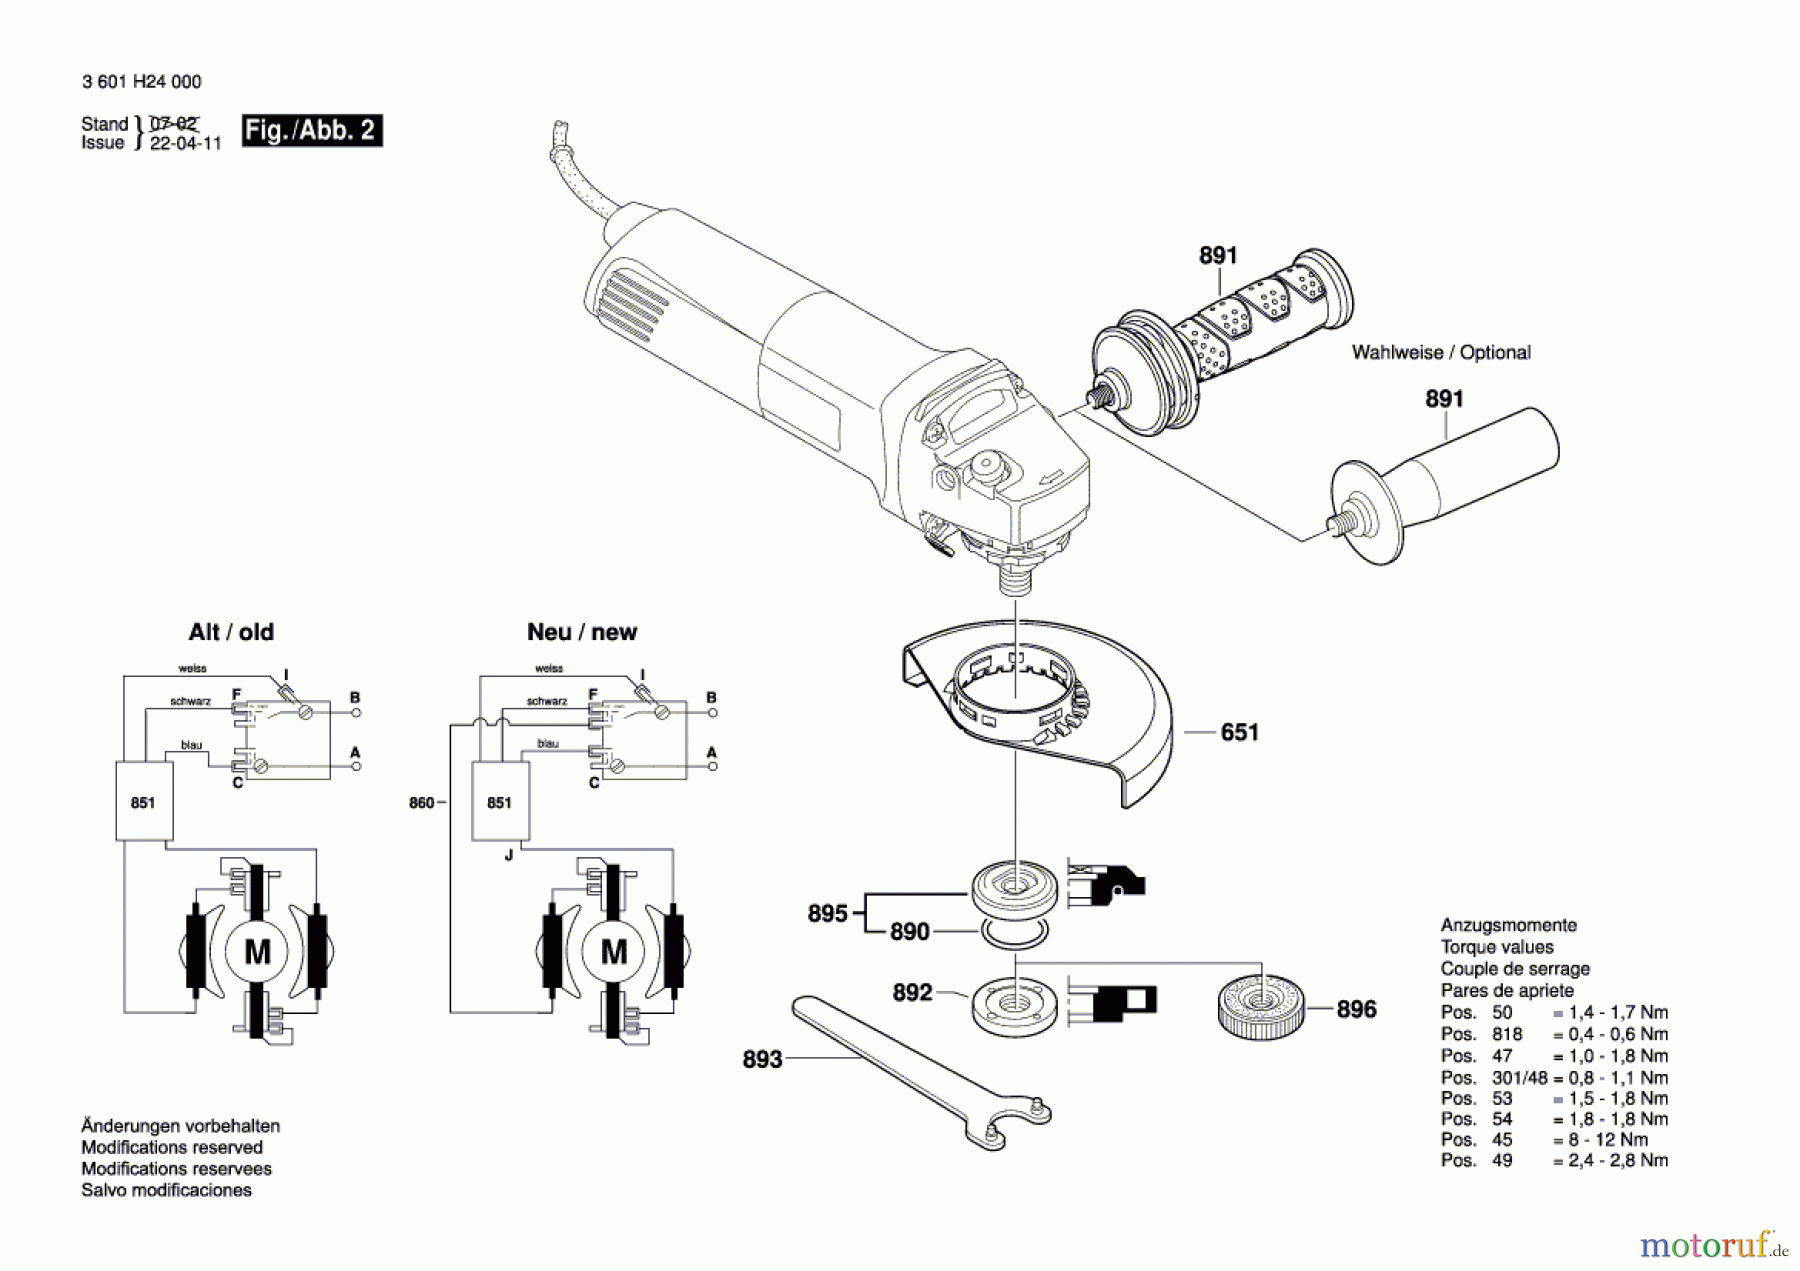  Bosch Werkzeug Winkelschleifer GWS 14-125 CI Seite 2